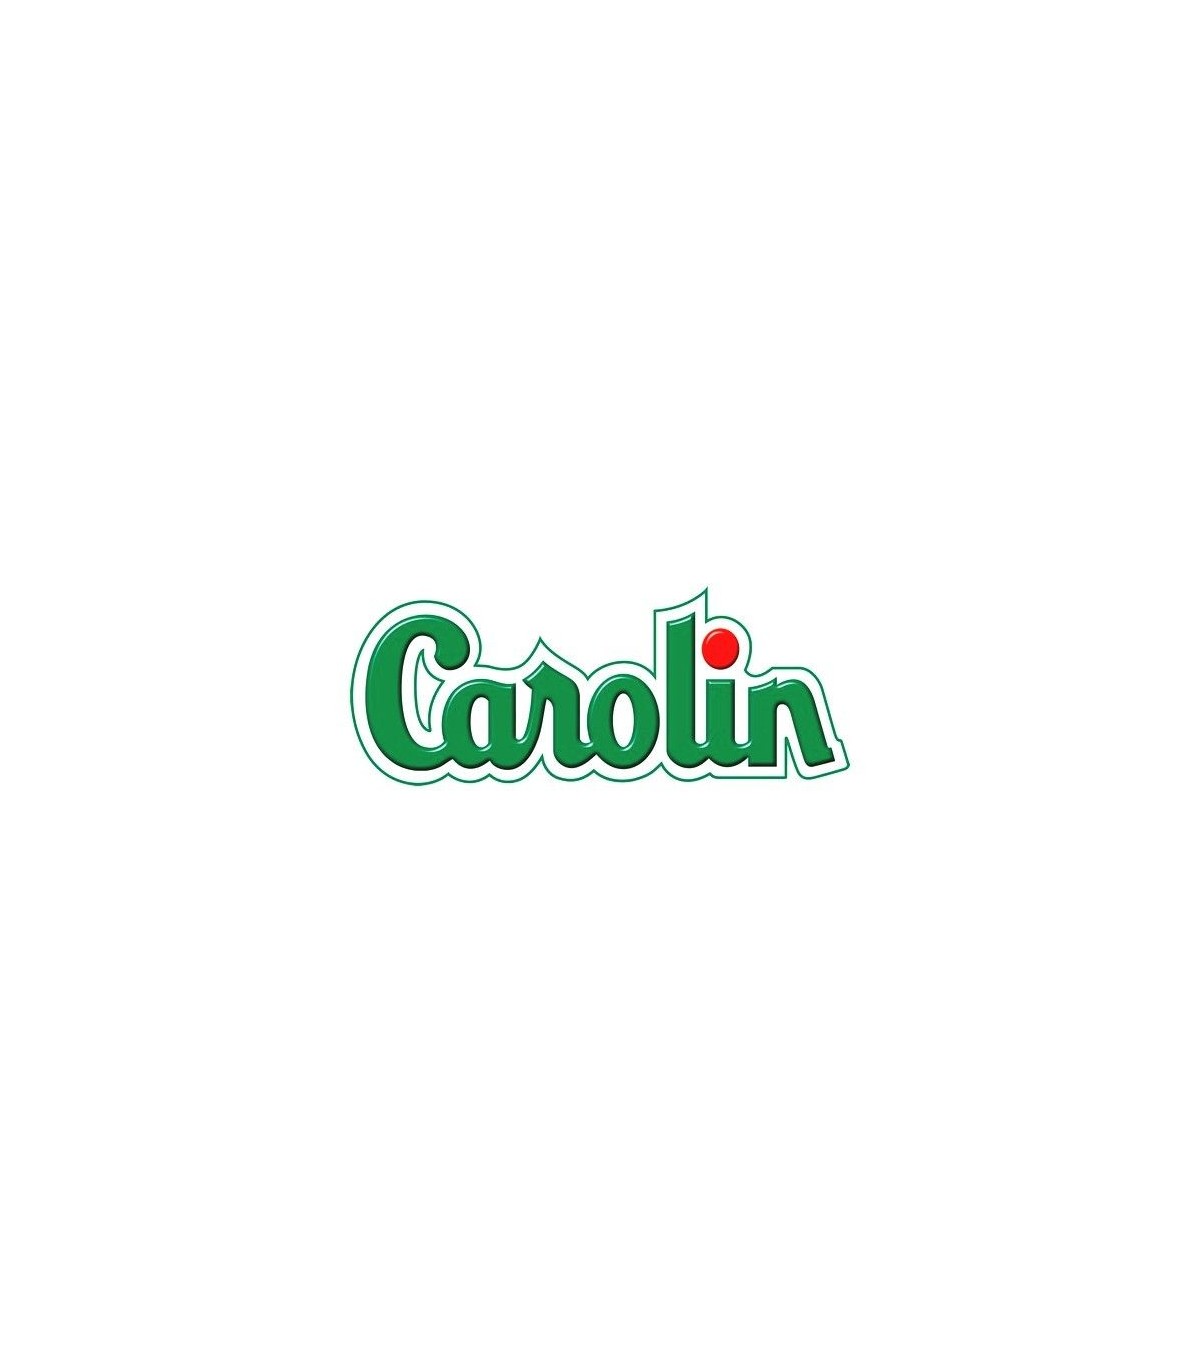 Carolin Floor Cleaner - Savon de Marseille - 6 x 1L - Pack